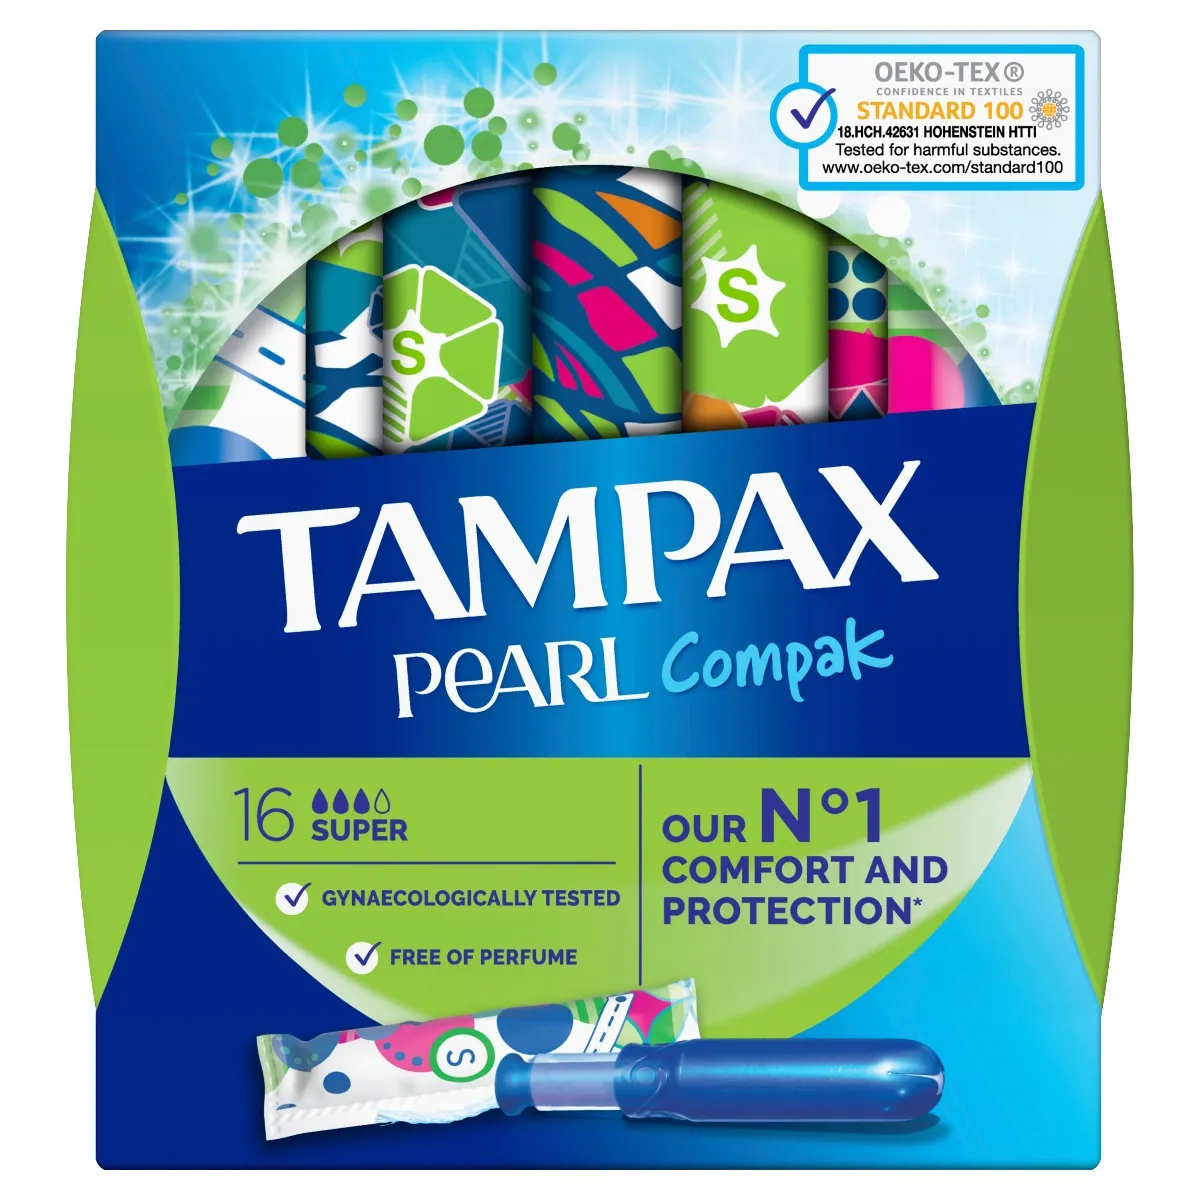 Tampax Pearl Super